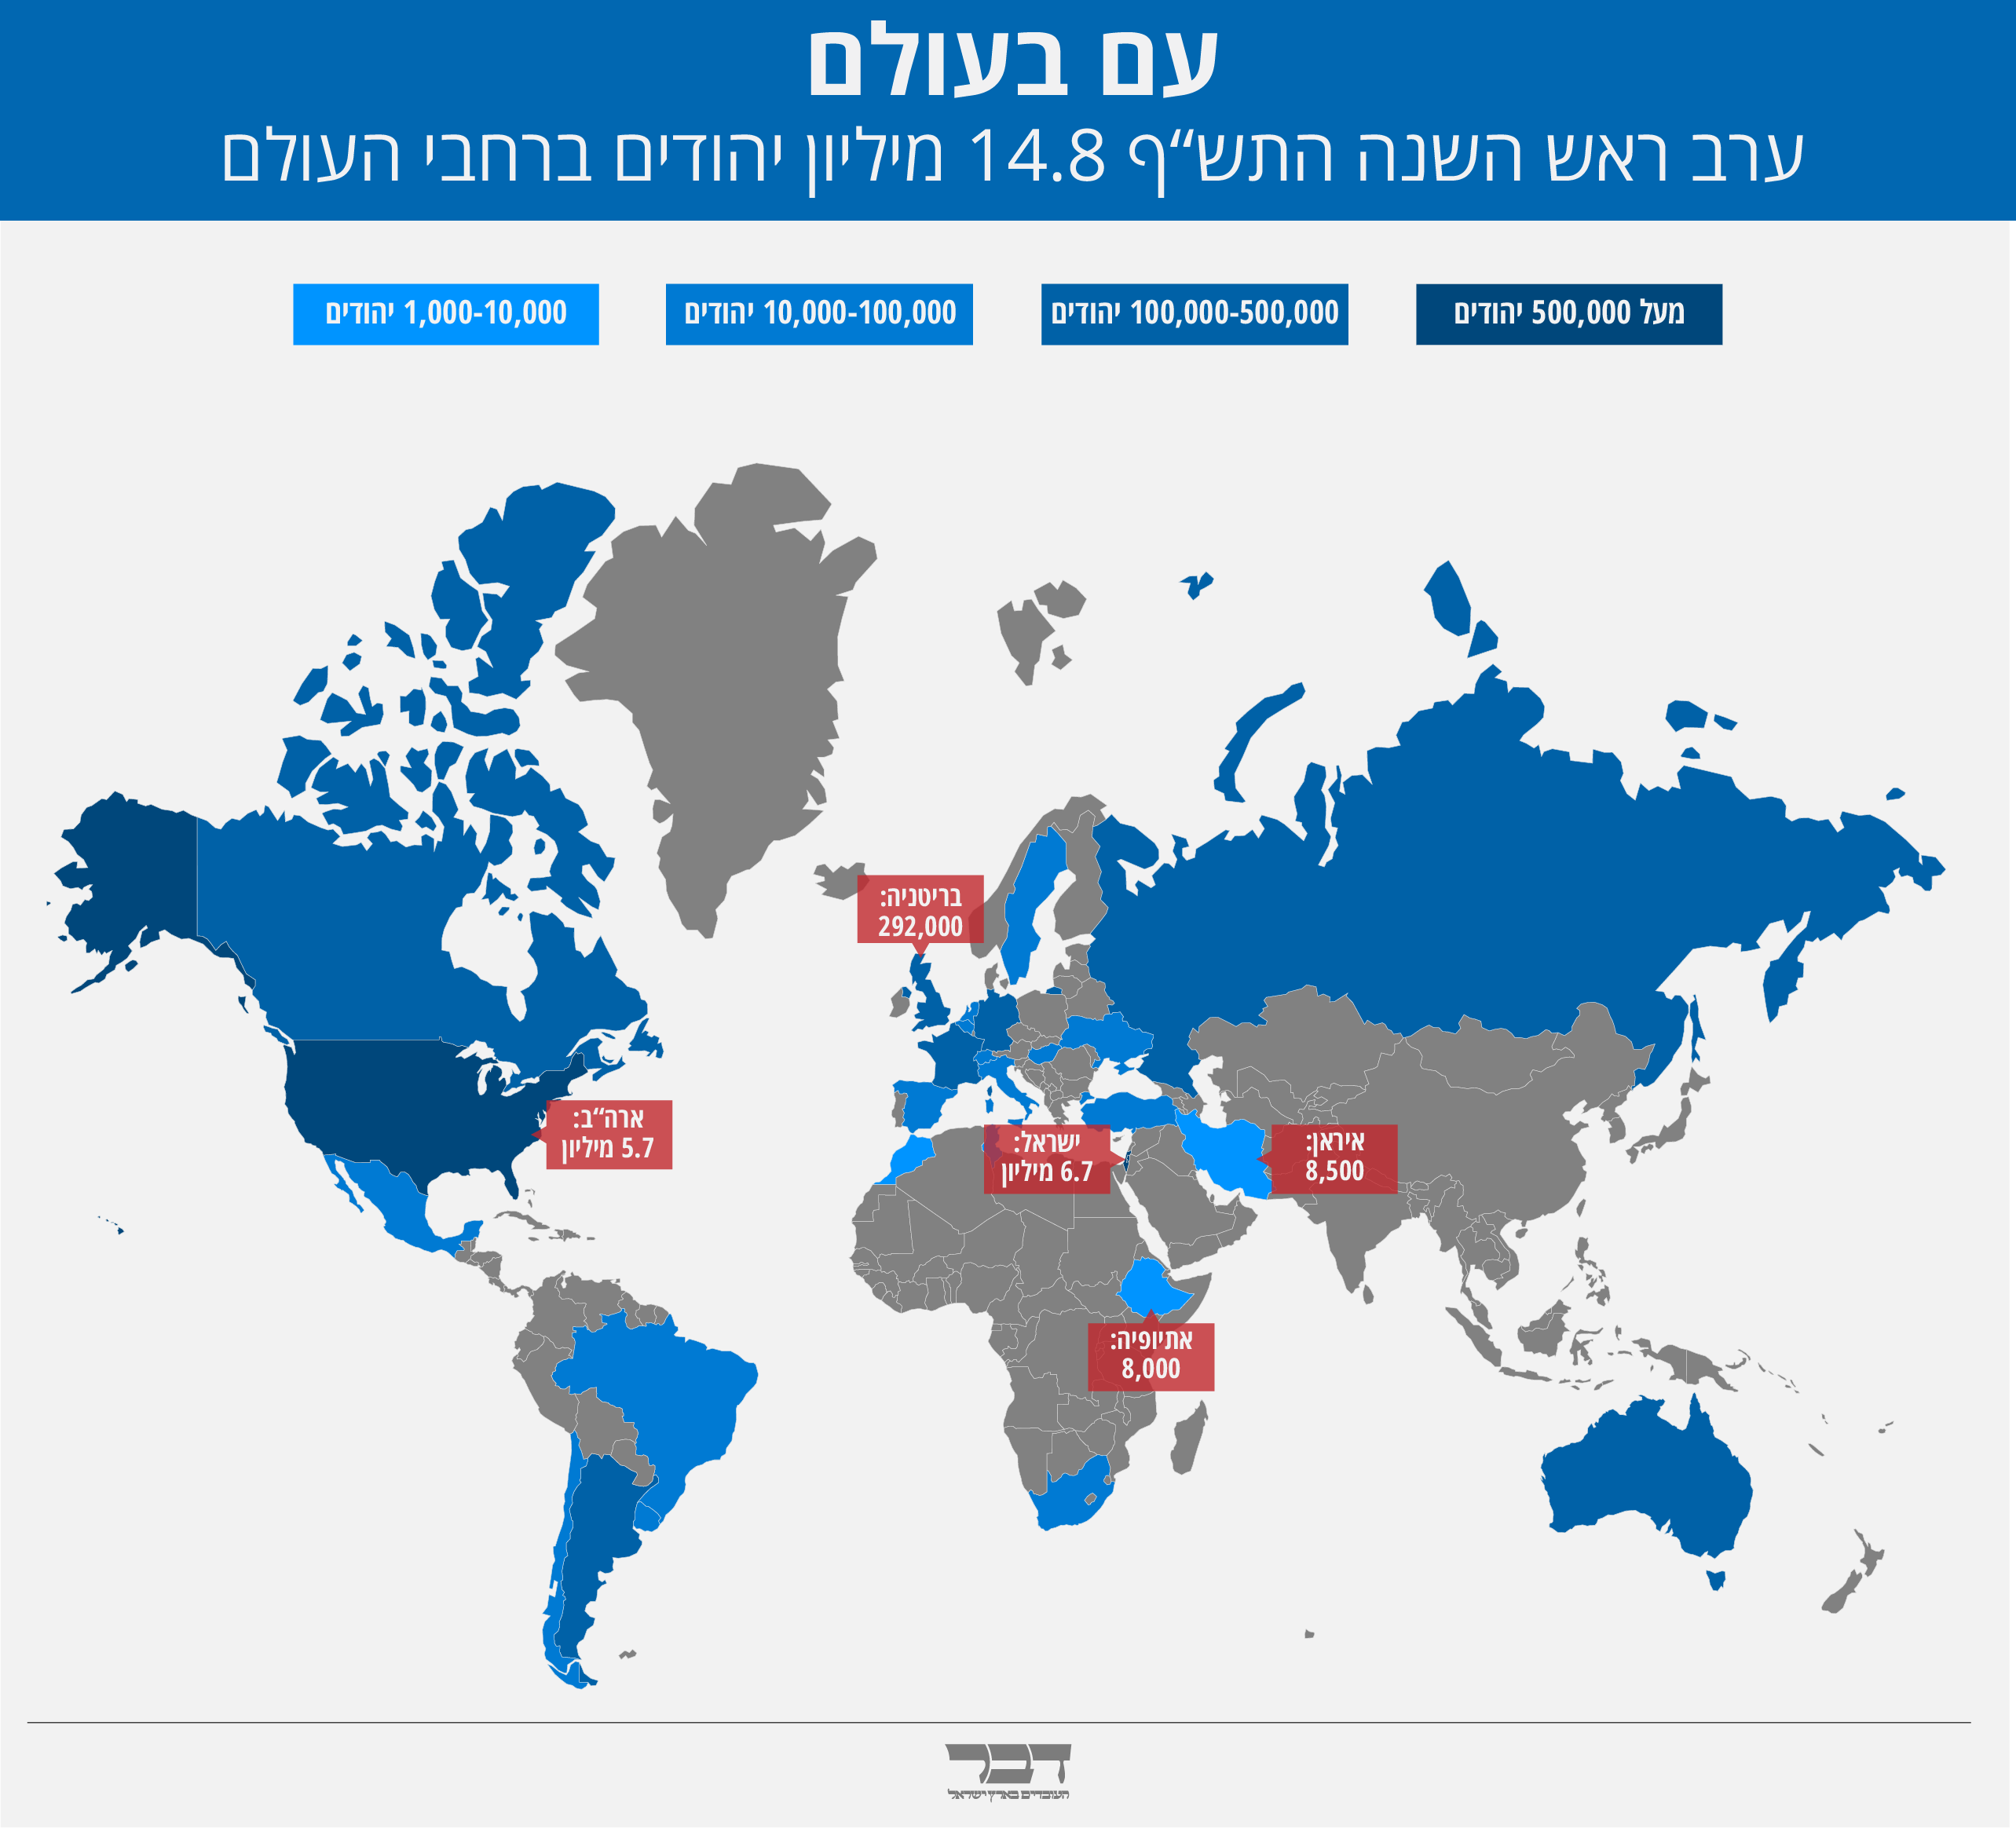 ערב ראש השנה התש”ף 14.8 מיליון יהודים ברחבי העולם (גרפיקה: אידאה)